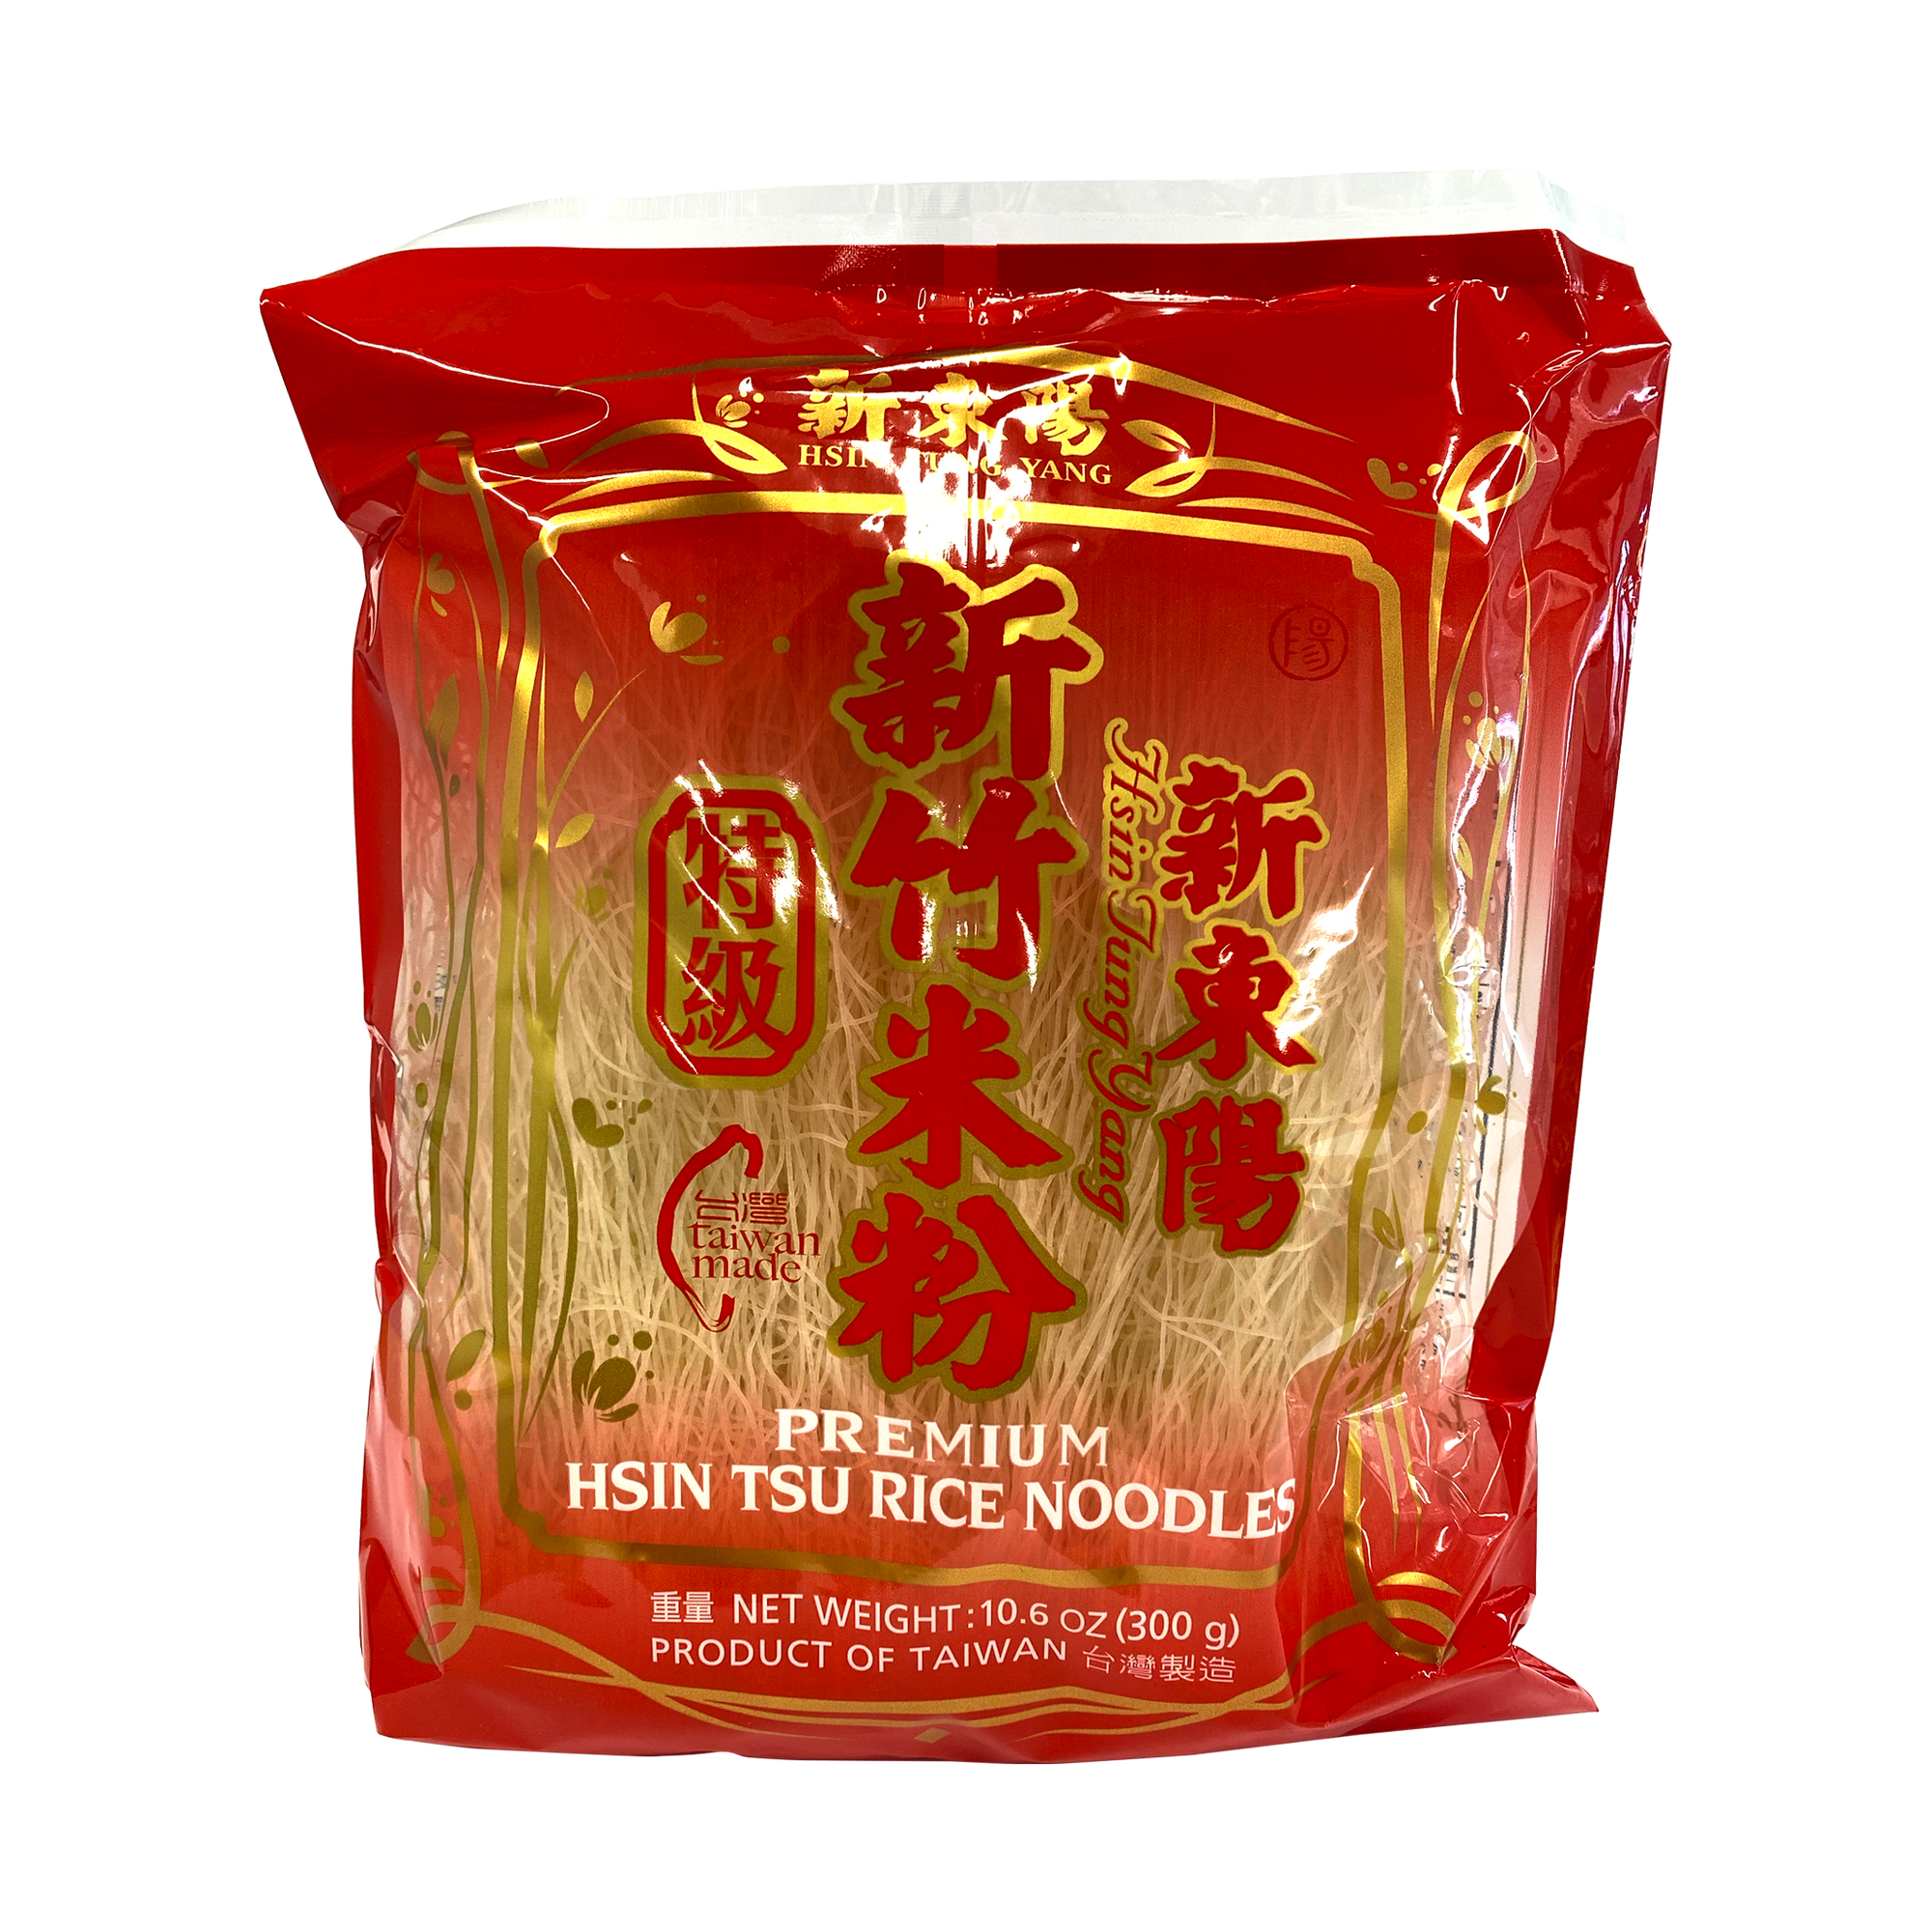 Hsin Tsu Rice Noodles